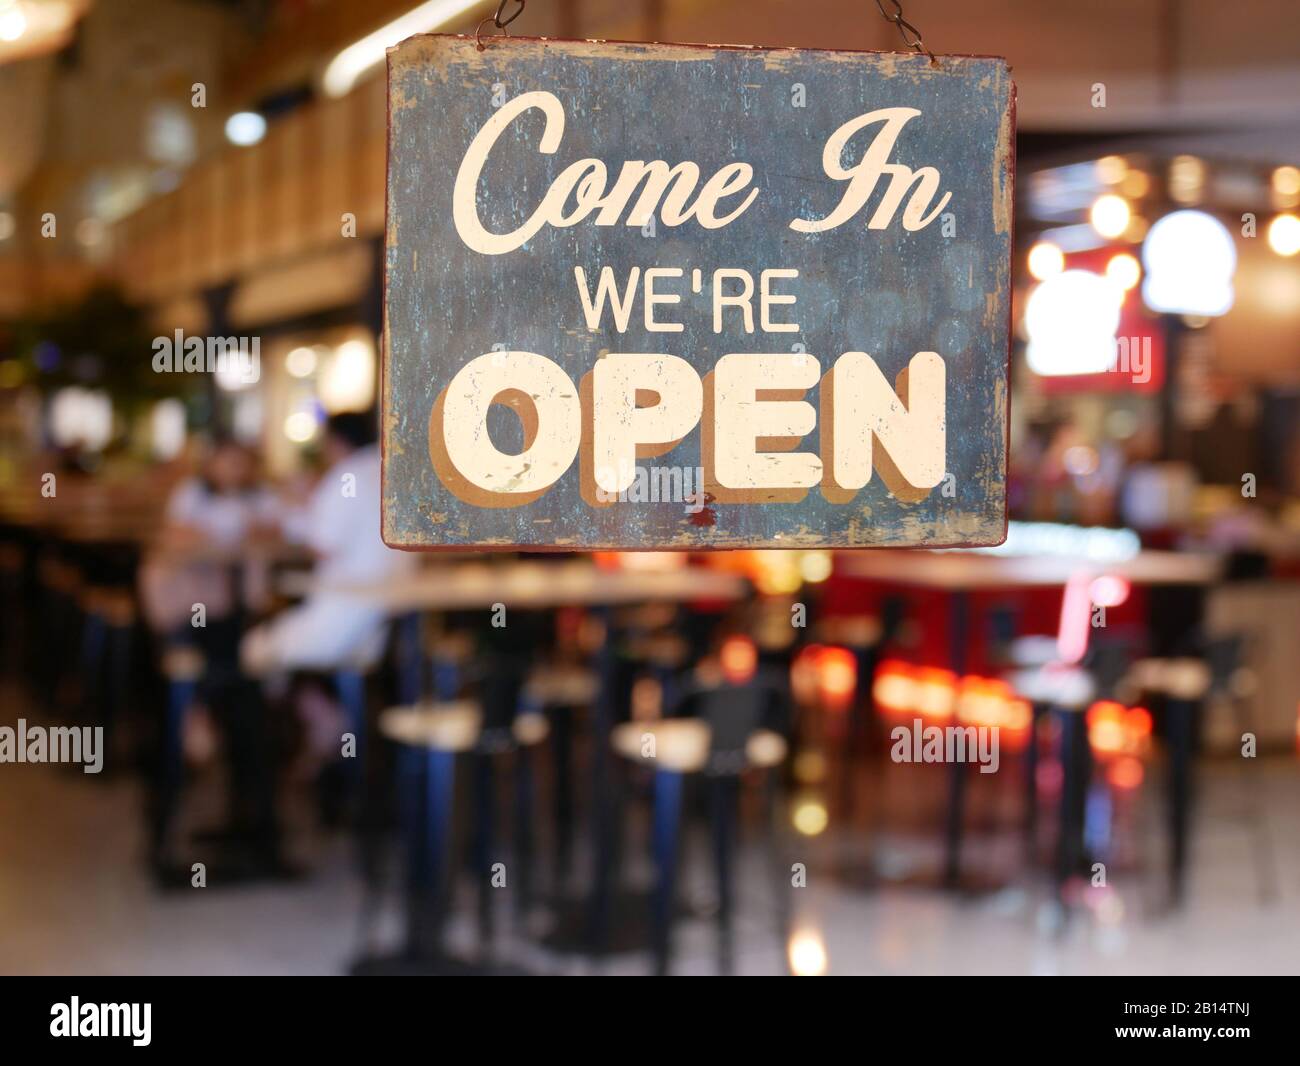 Un segno vintage commerciale che dice 'come in We're Open' sulla finestra Cafe / Ristorante. Immagine di ristorante offuscato astratto con la gente. Foto Stock